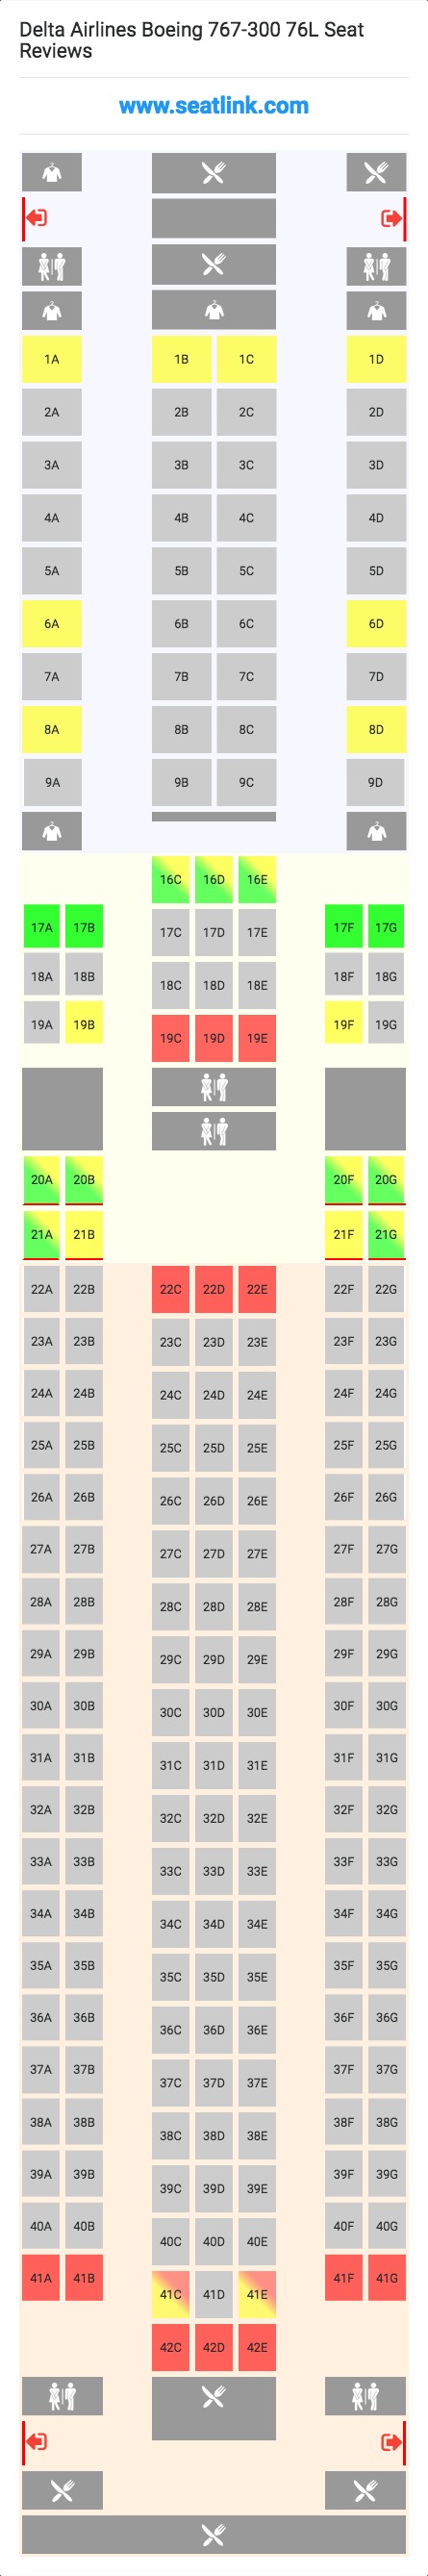 Delta Flight 64 Seating Chart